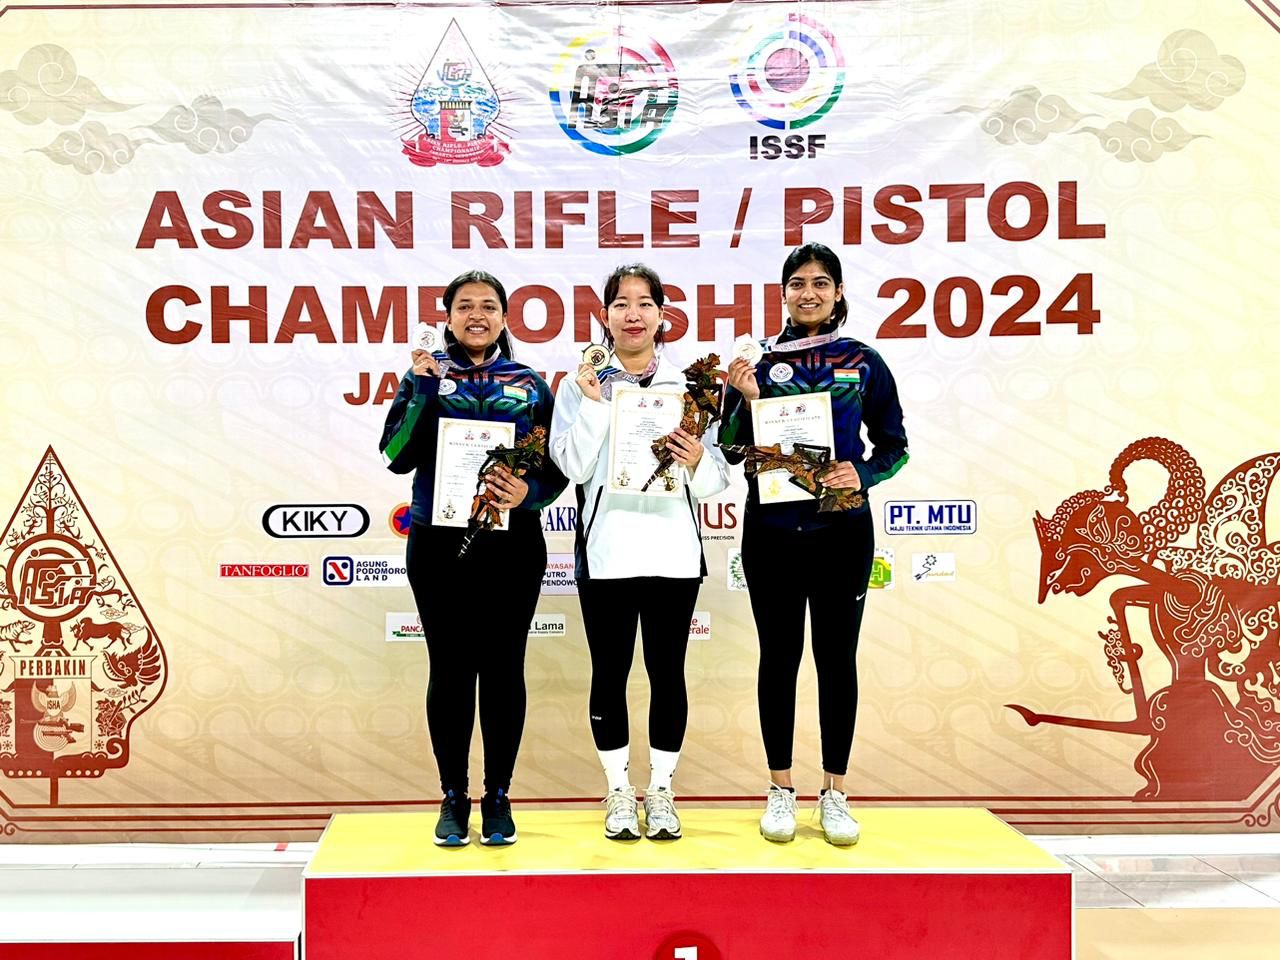 खेल मंत्री मीत हेयर ने एशियन चैंपियनशिप में स्वर्ण और रजत पदक जीतने के लिए सिफ़्त कौर समरा को दी बधाई